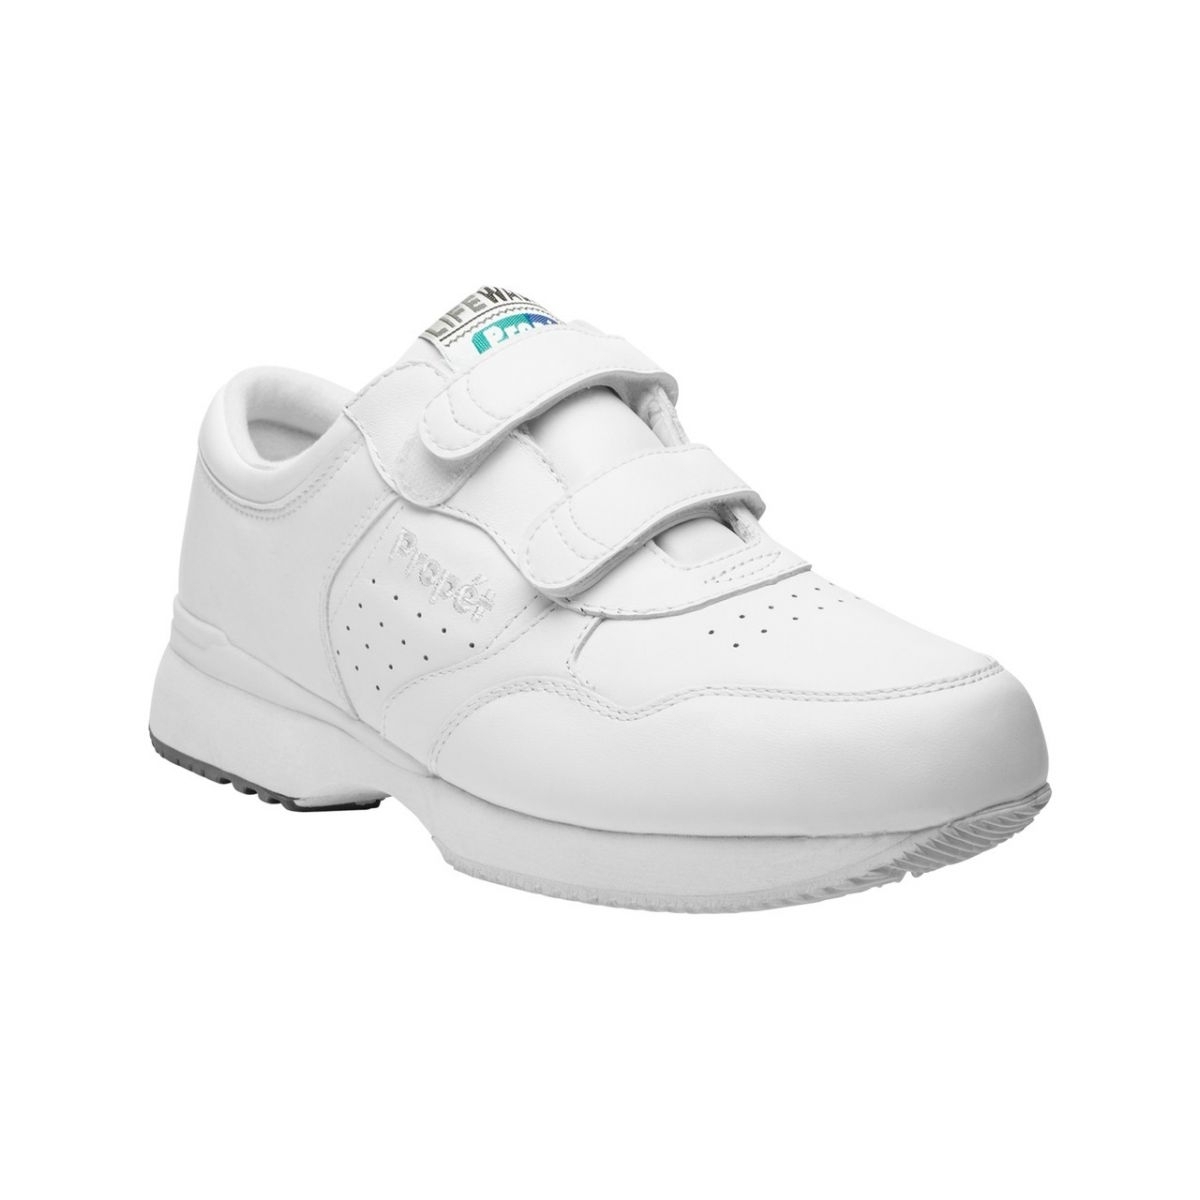 PropÃ©t Mens LifeWalker Strap Walking Walking Sneakers Athletic Shoes - Black 7 BLACK - WHITE, 15-3E